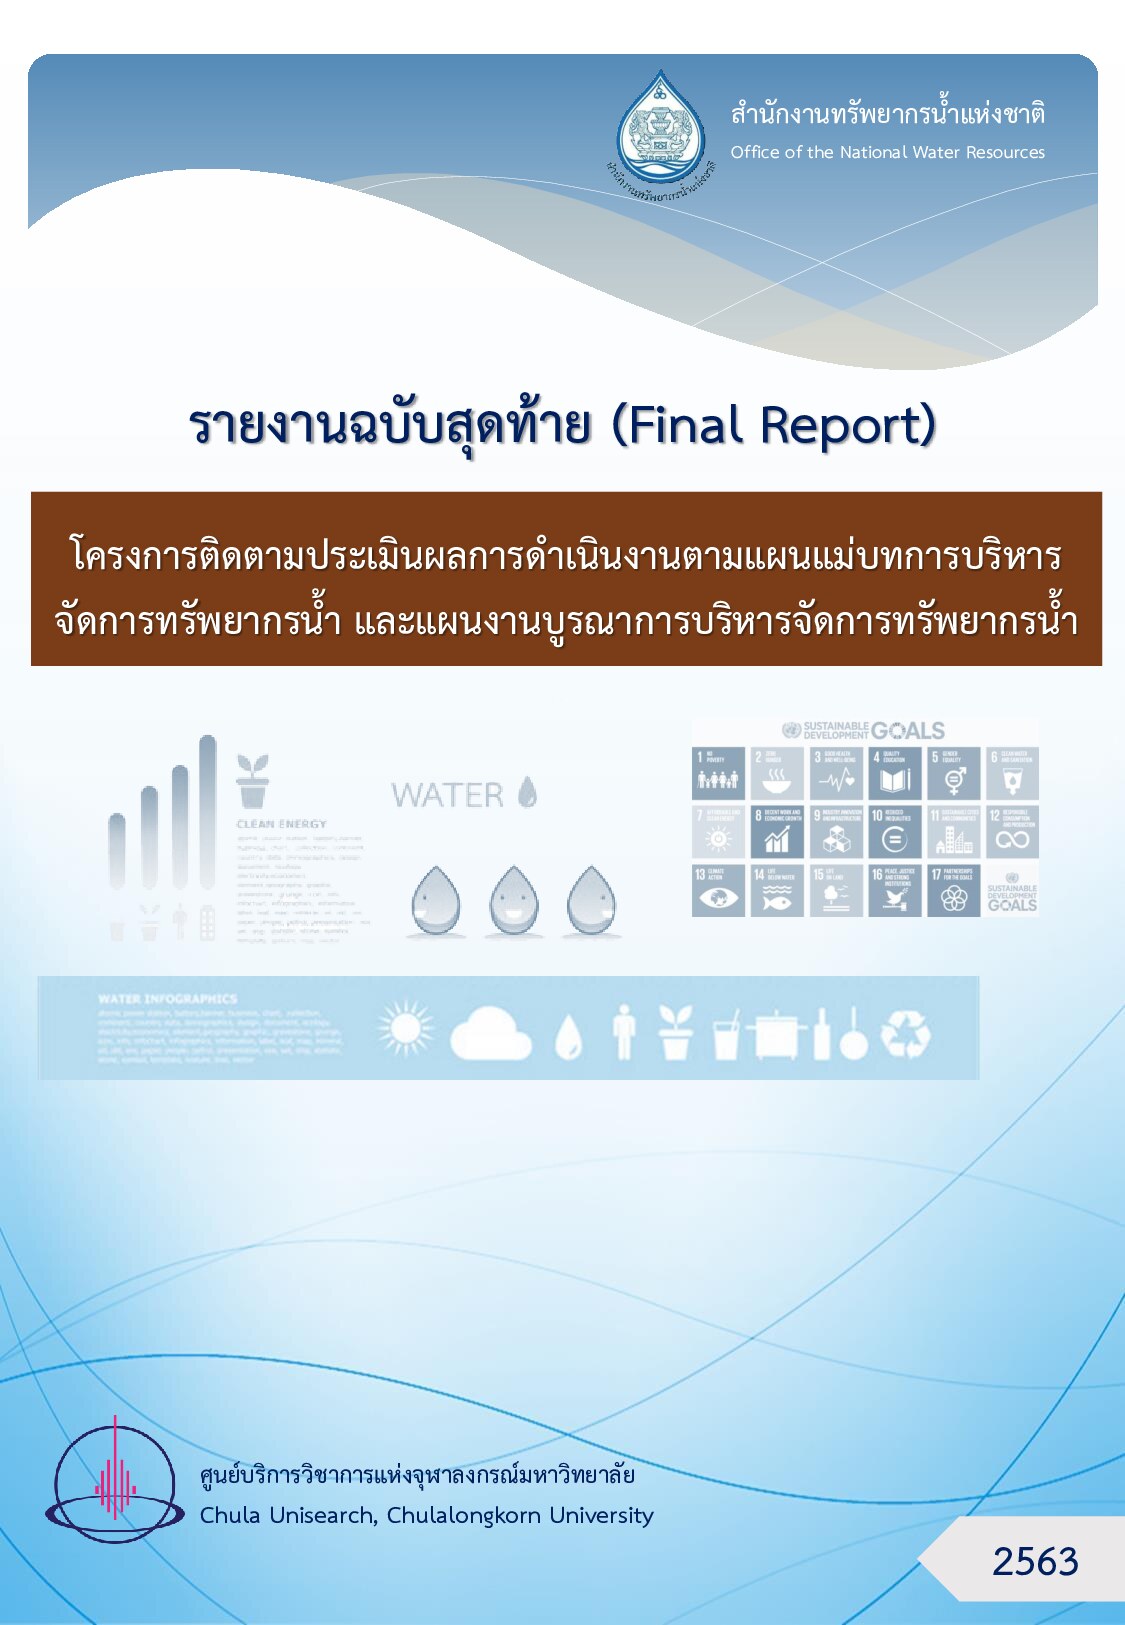 เล่มที่ 1 รายงานฉบับสุดท้าย โครงการติดตามประเมินผลการดำเนินงานตามแผนแม่บทการบริหารจัดการทรัพยากรน้ำ และแผนงานบูรณาการบริหารจัดการทรัพยากรน้ำ